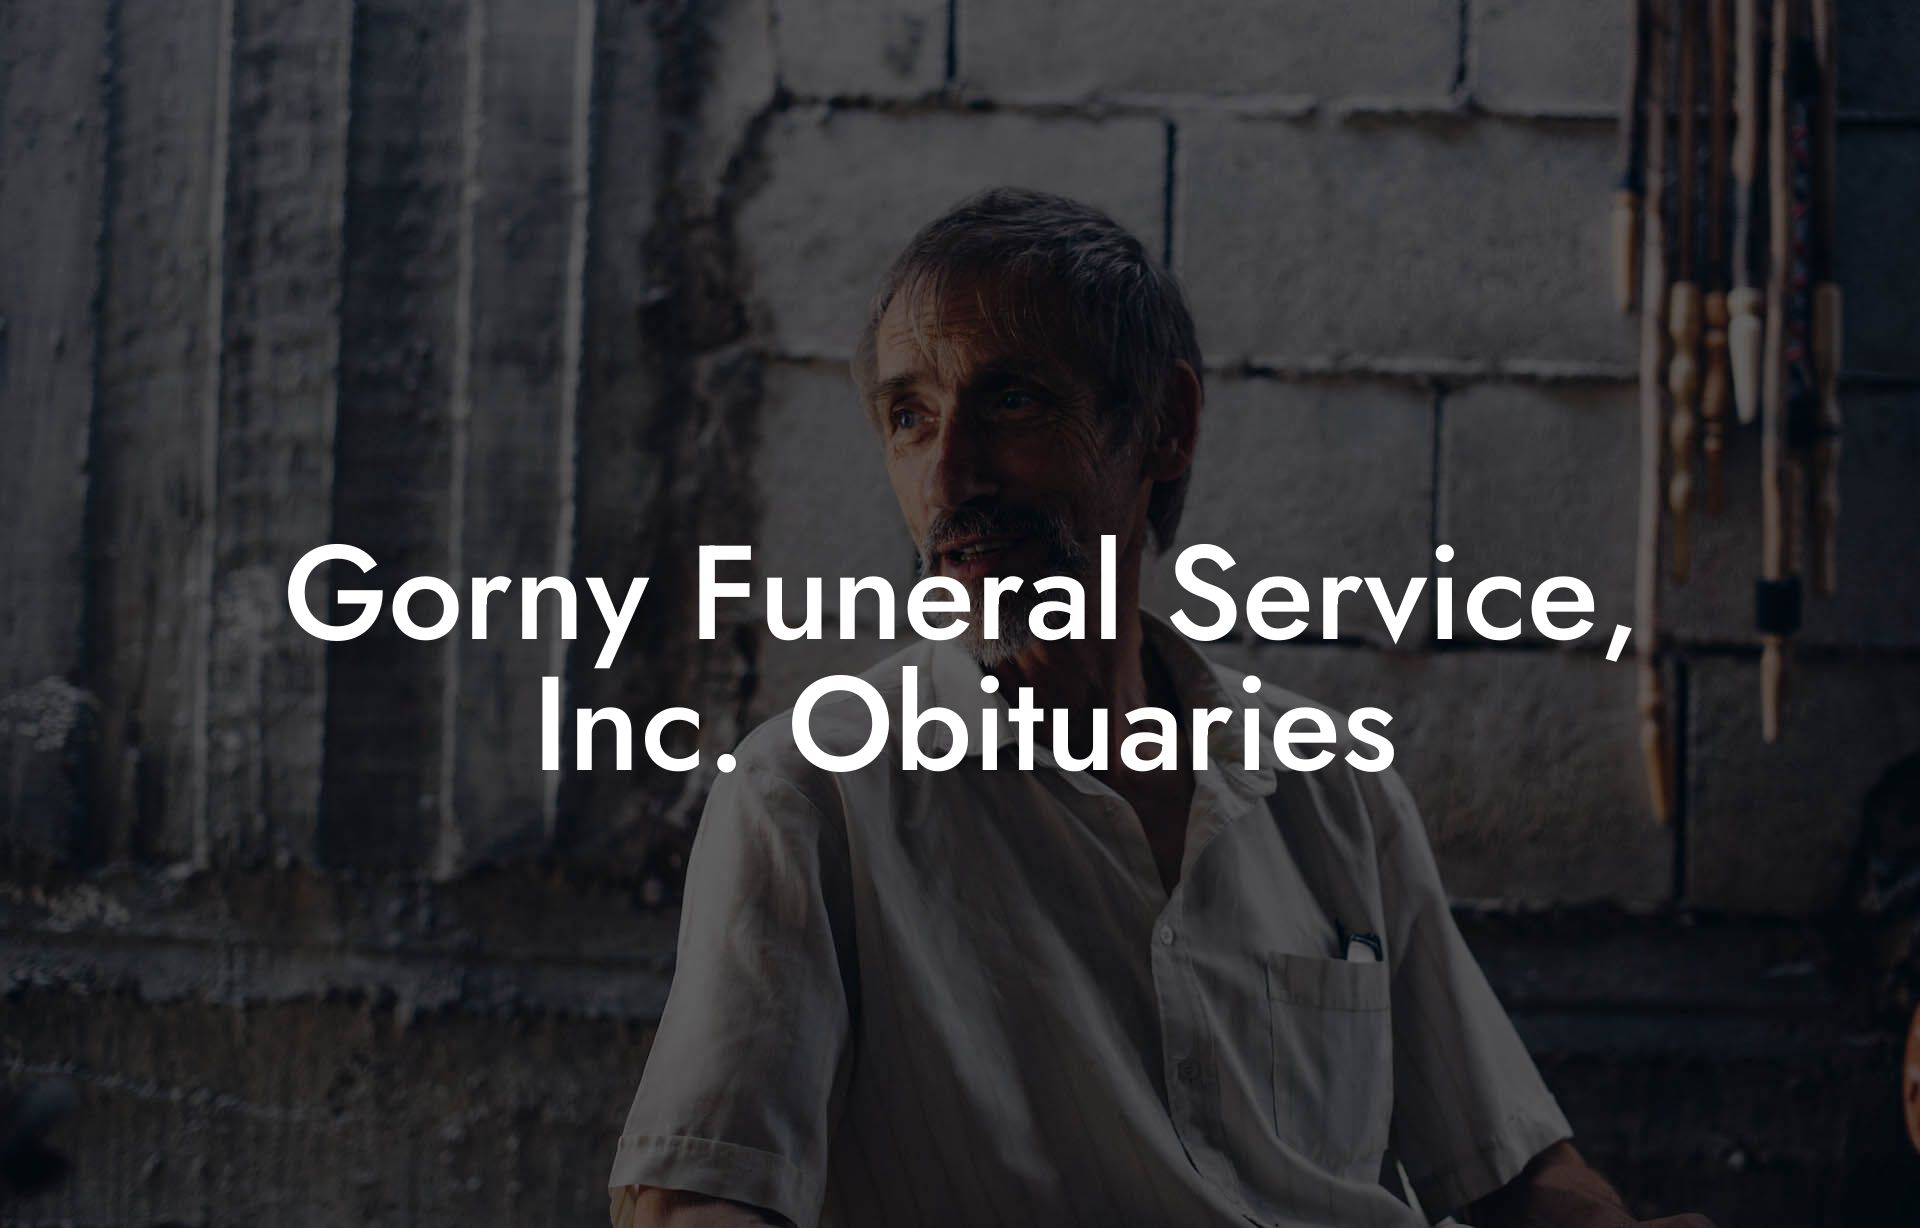 Gorny Funeral Service, Inc. Obituaries